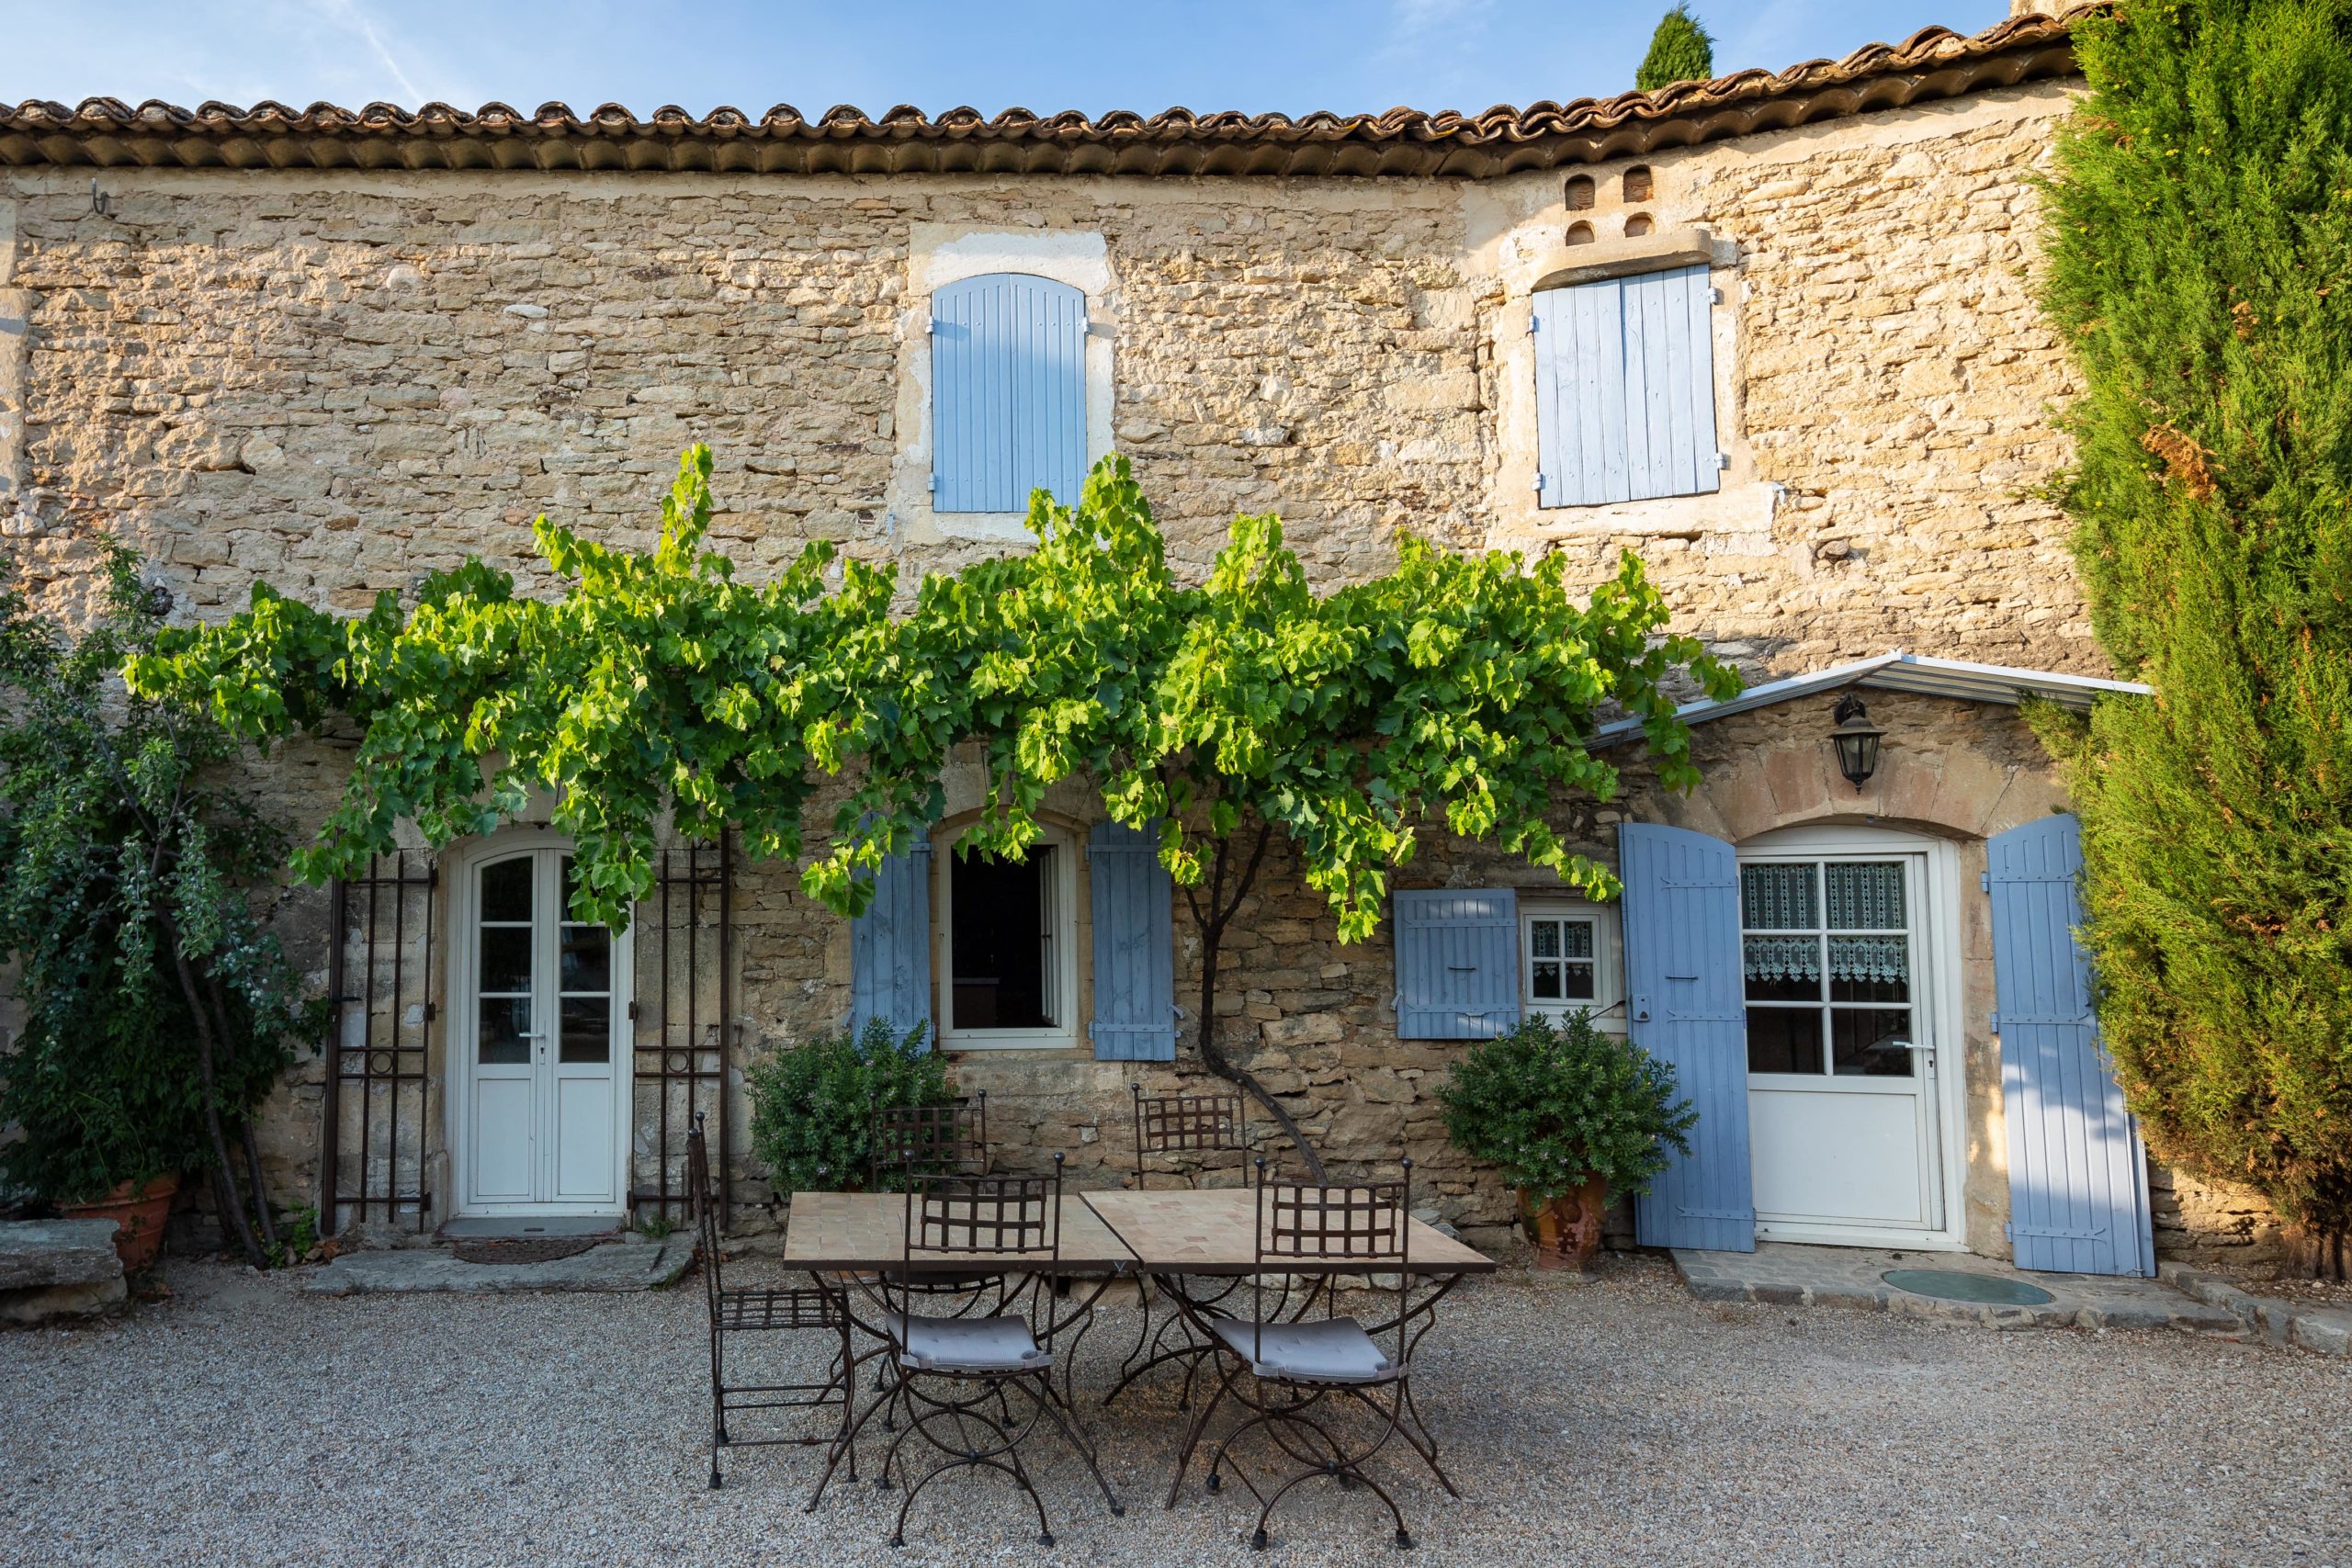 Maison provençale en pierre avec des volets en bois bleu